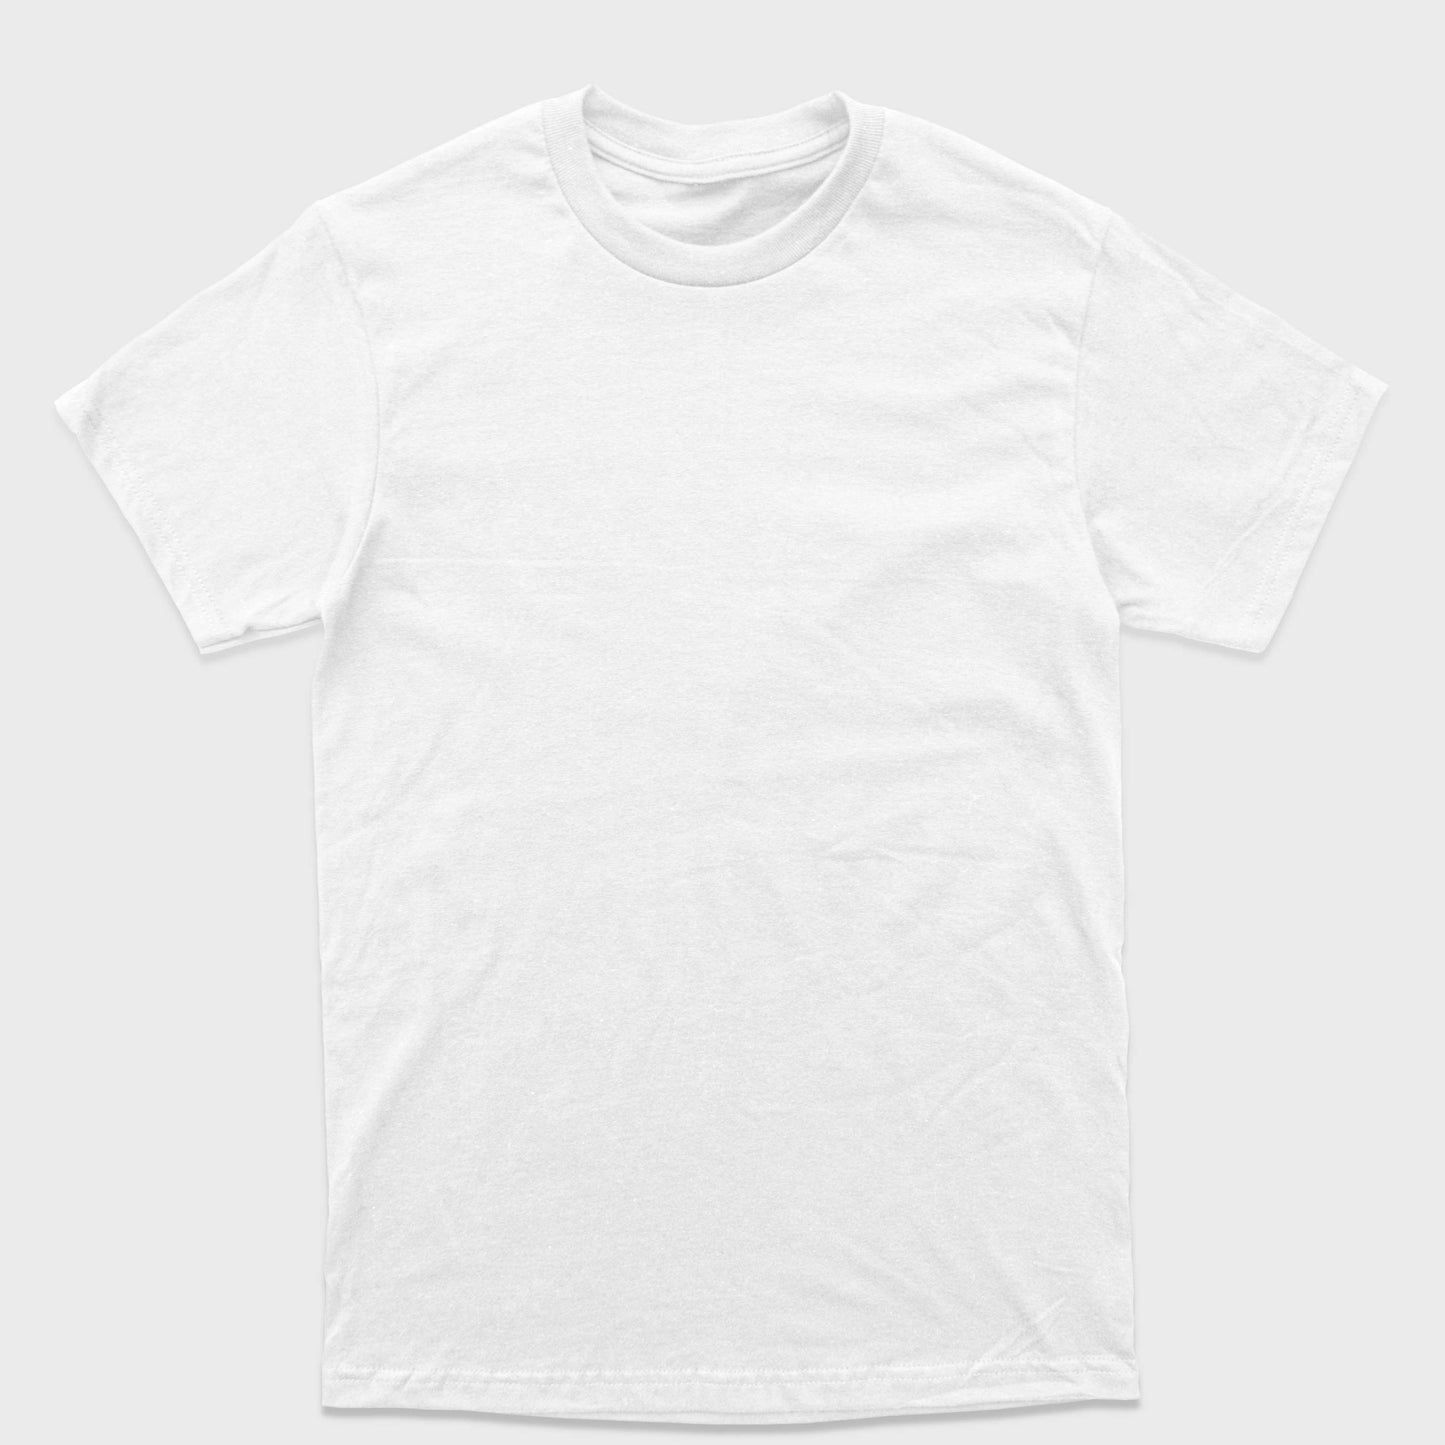 Camiseta Branca 100% algodão T-Shirt 30.1